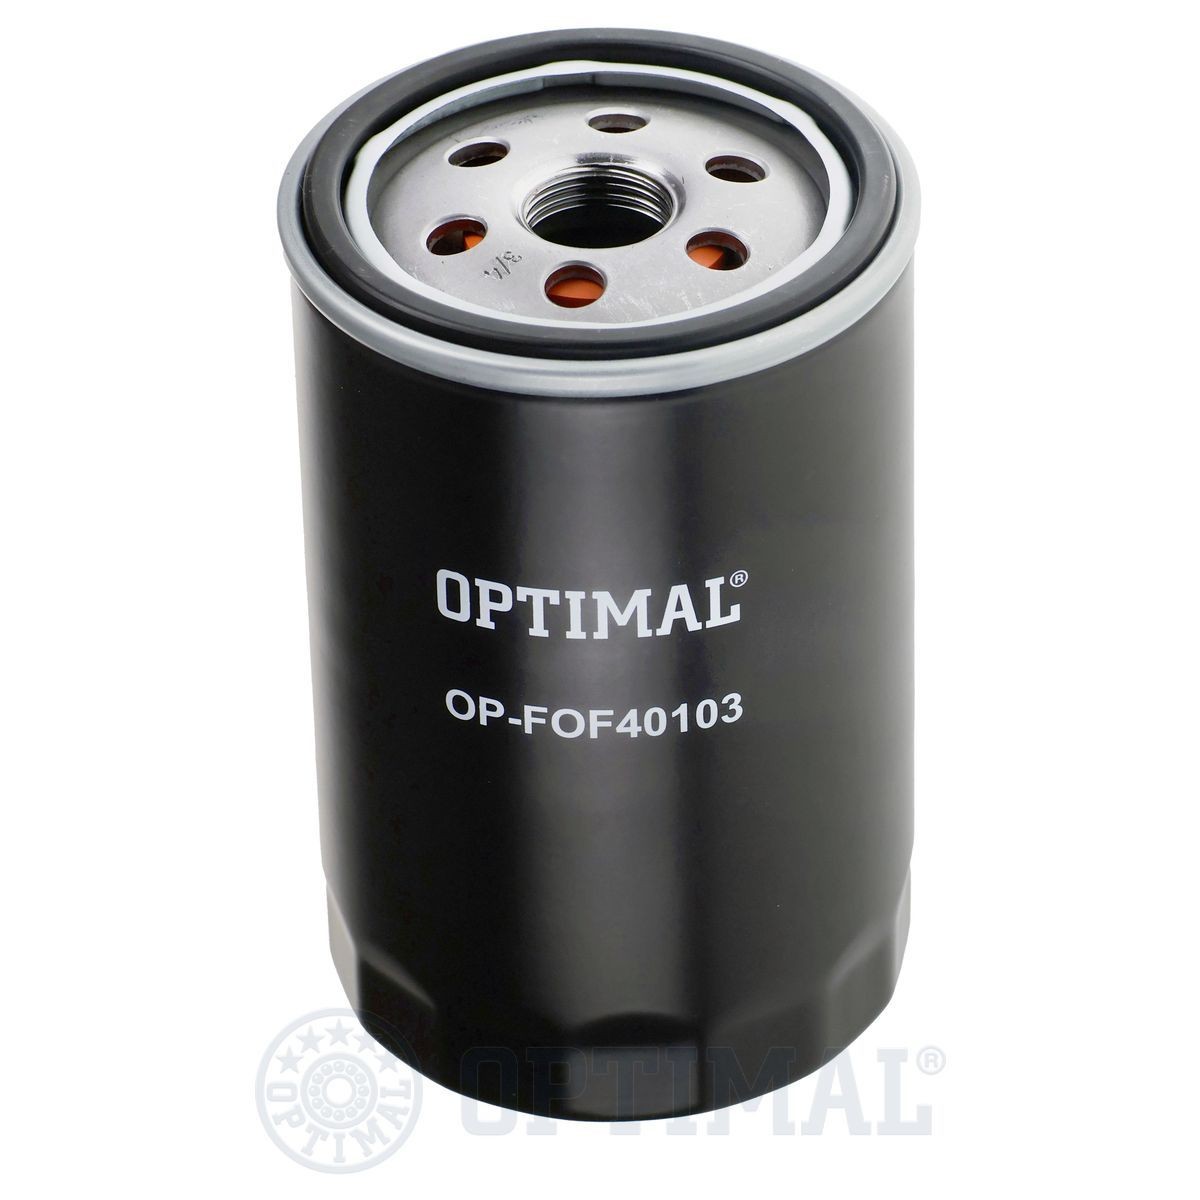 OPTIMAL OP-FOF40103 Oil filter CA02-14-302